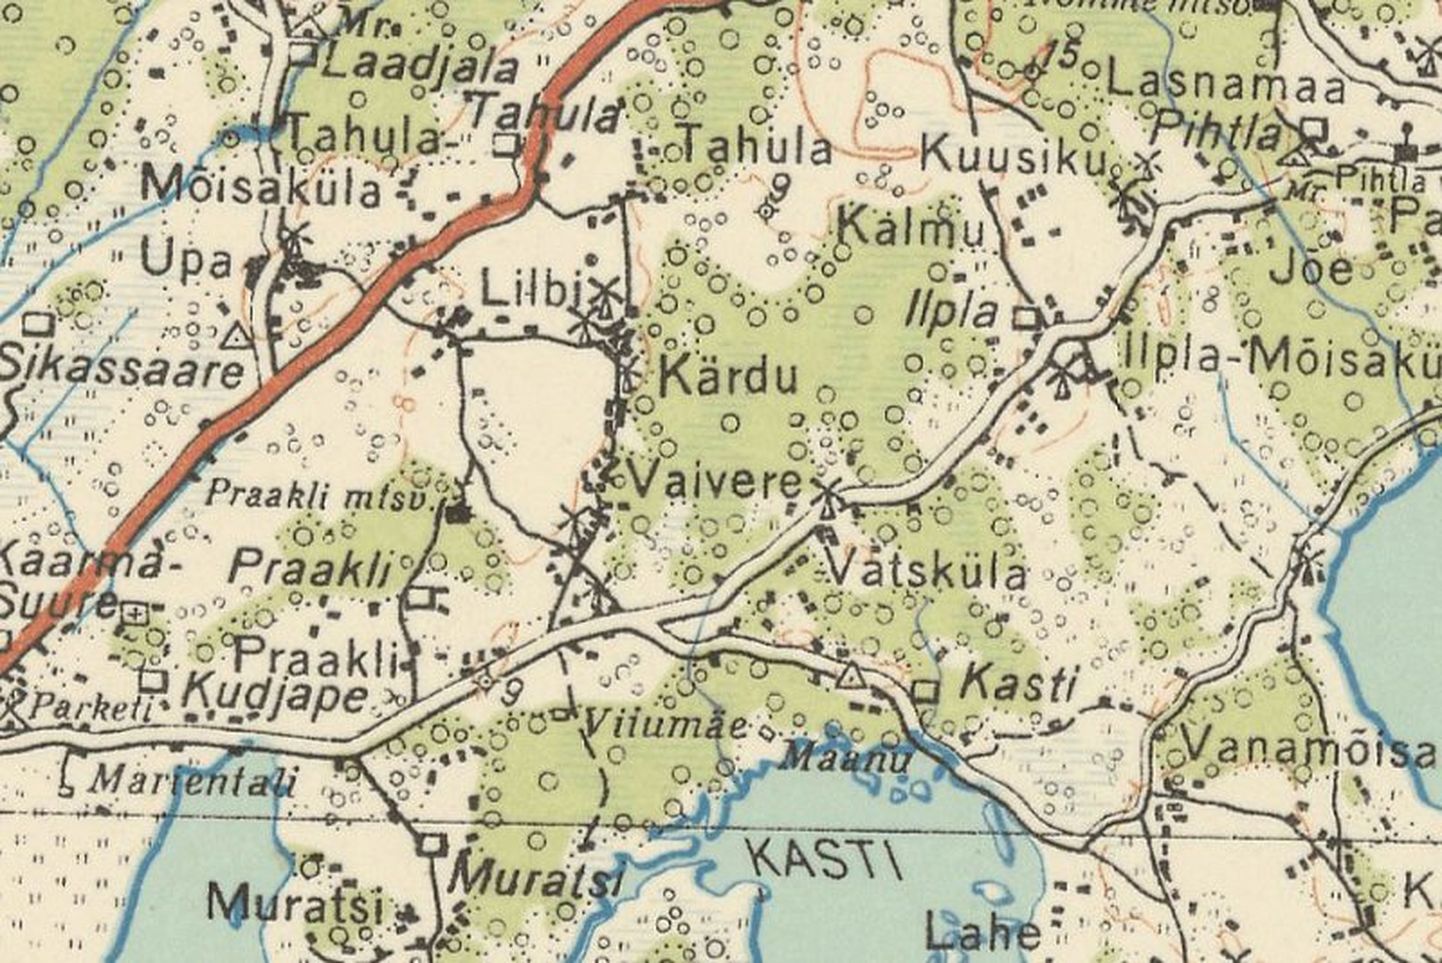 Eesti Vabariigi ülevaatekaart 1:200 000 (1938) fragment.